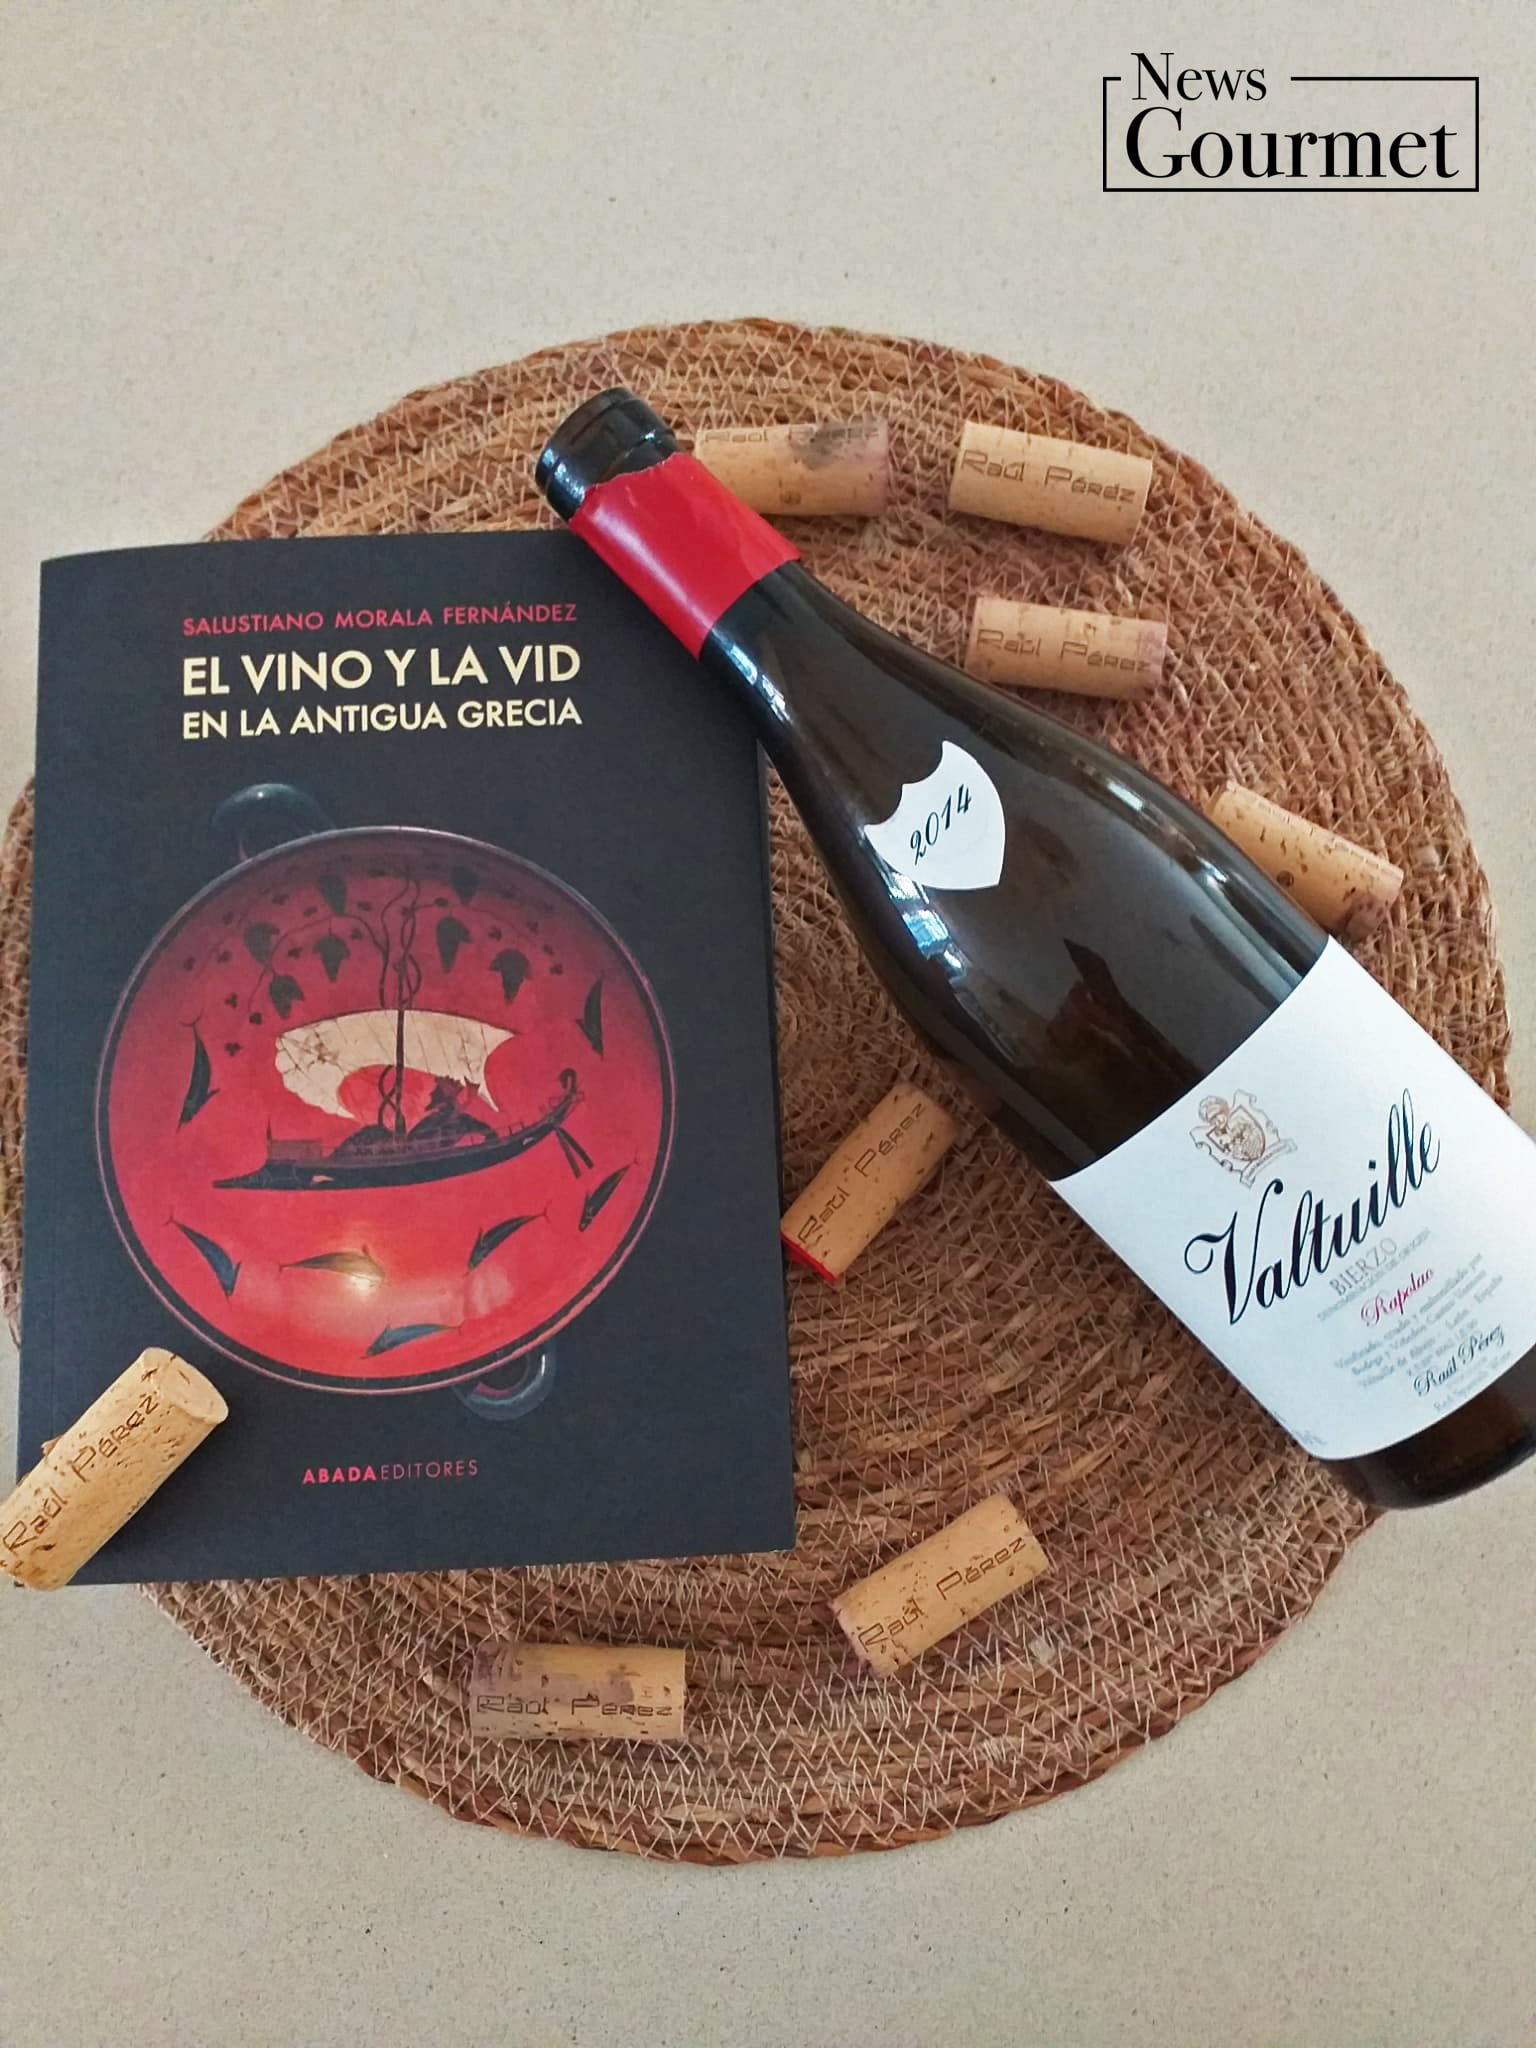 qué vino me bebo - El vino y la vid en la antigua Grecia & Valtuille Rapolao 2014